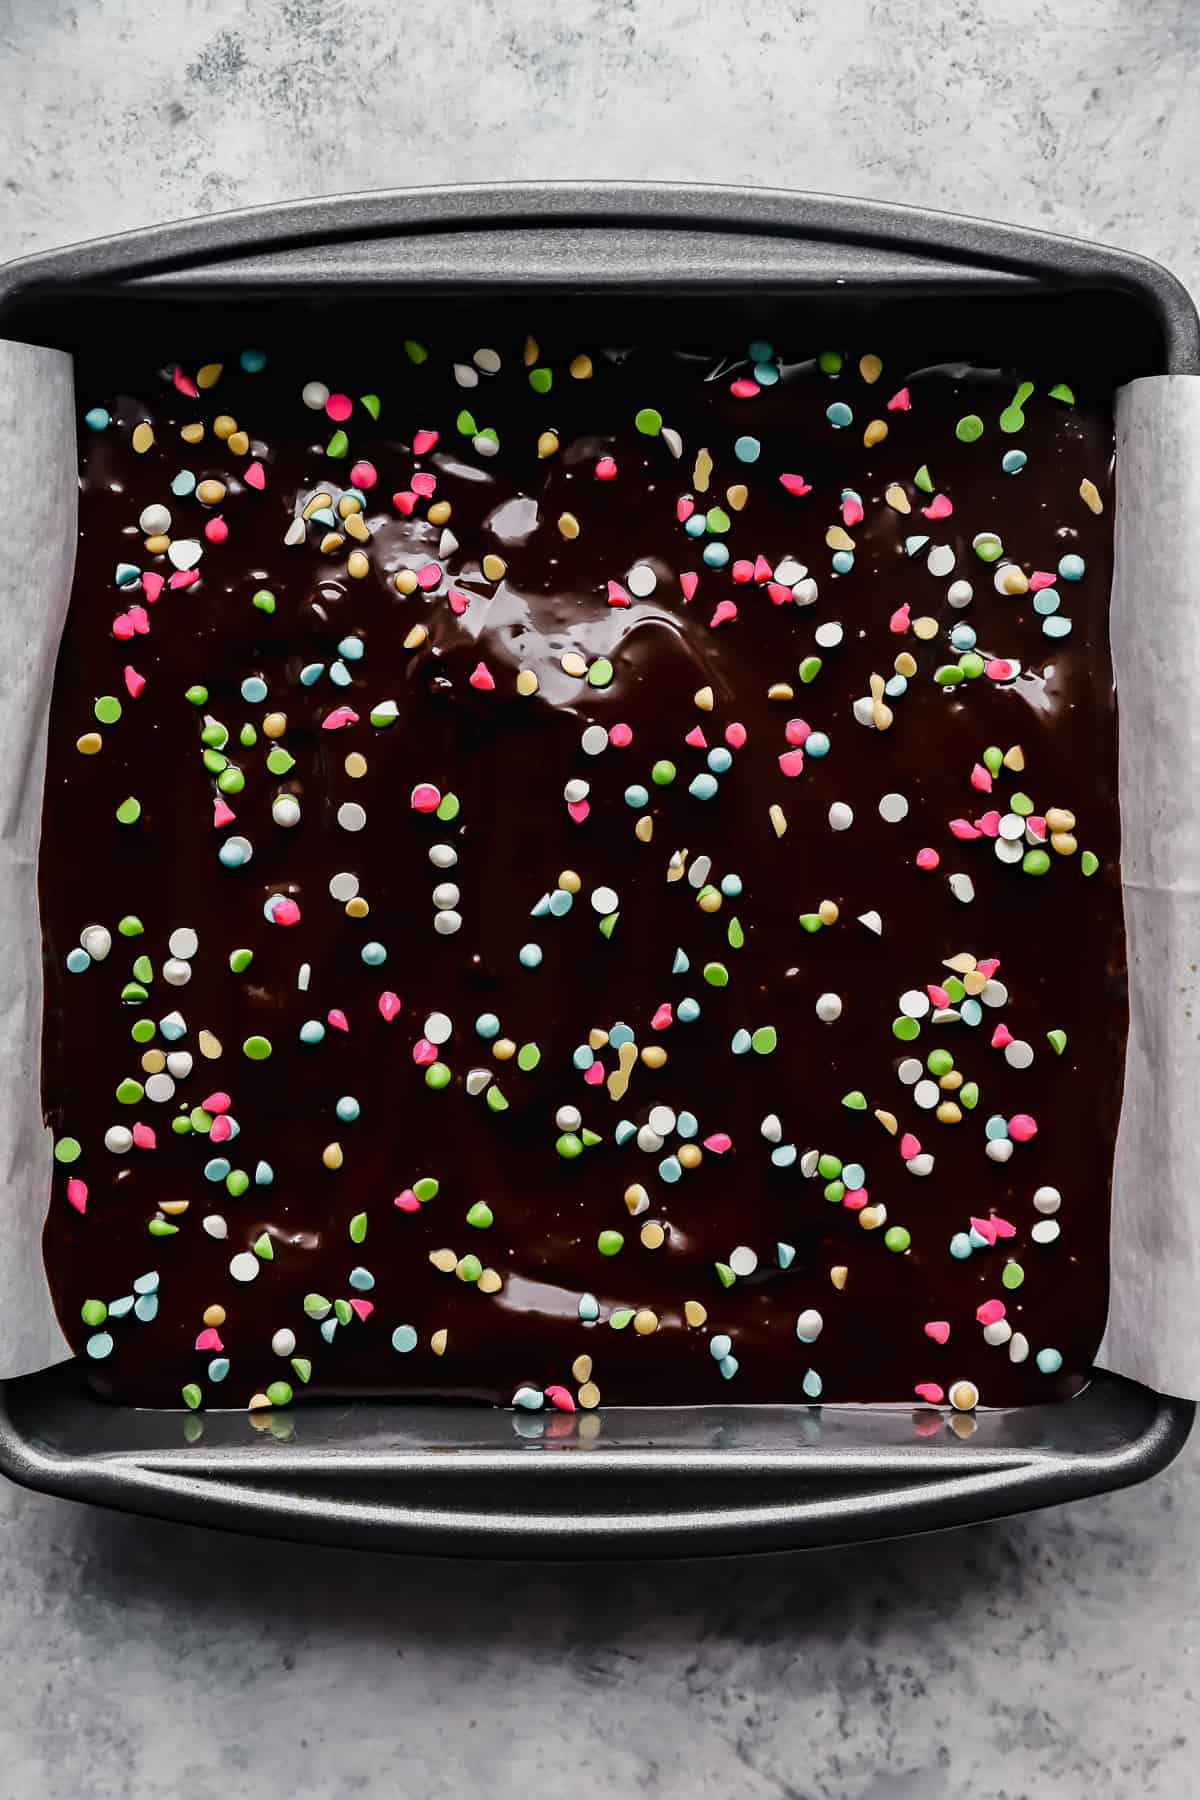 brownies cosmici in una teglia foderata di pergamena.